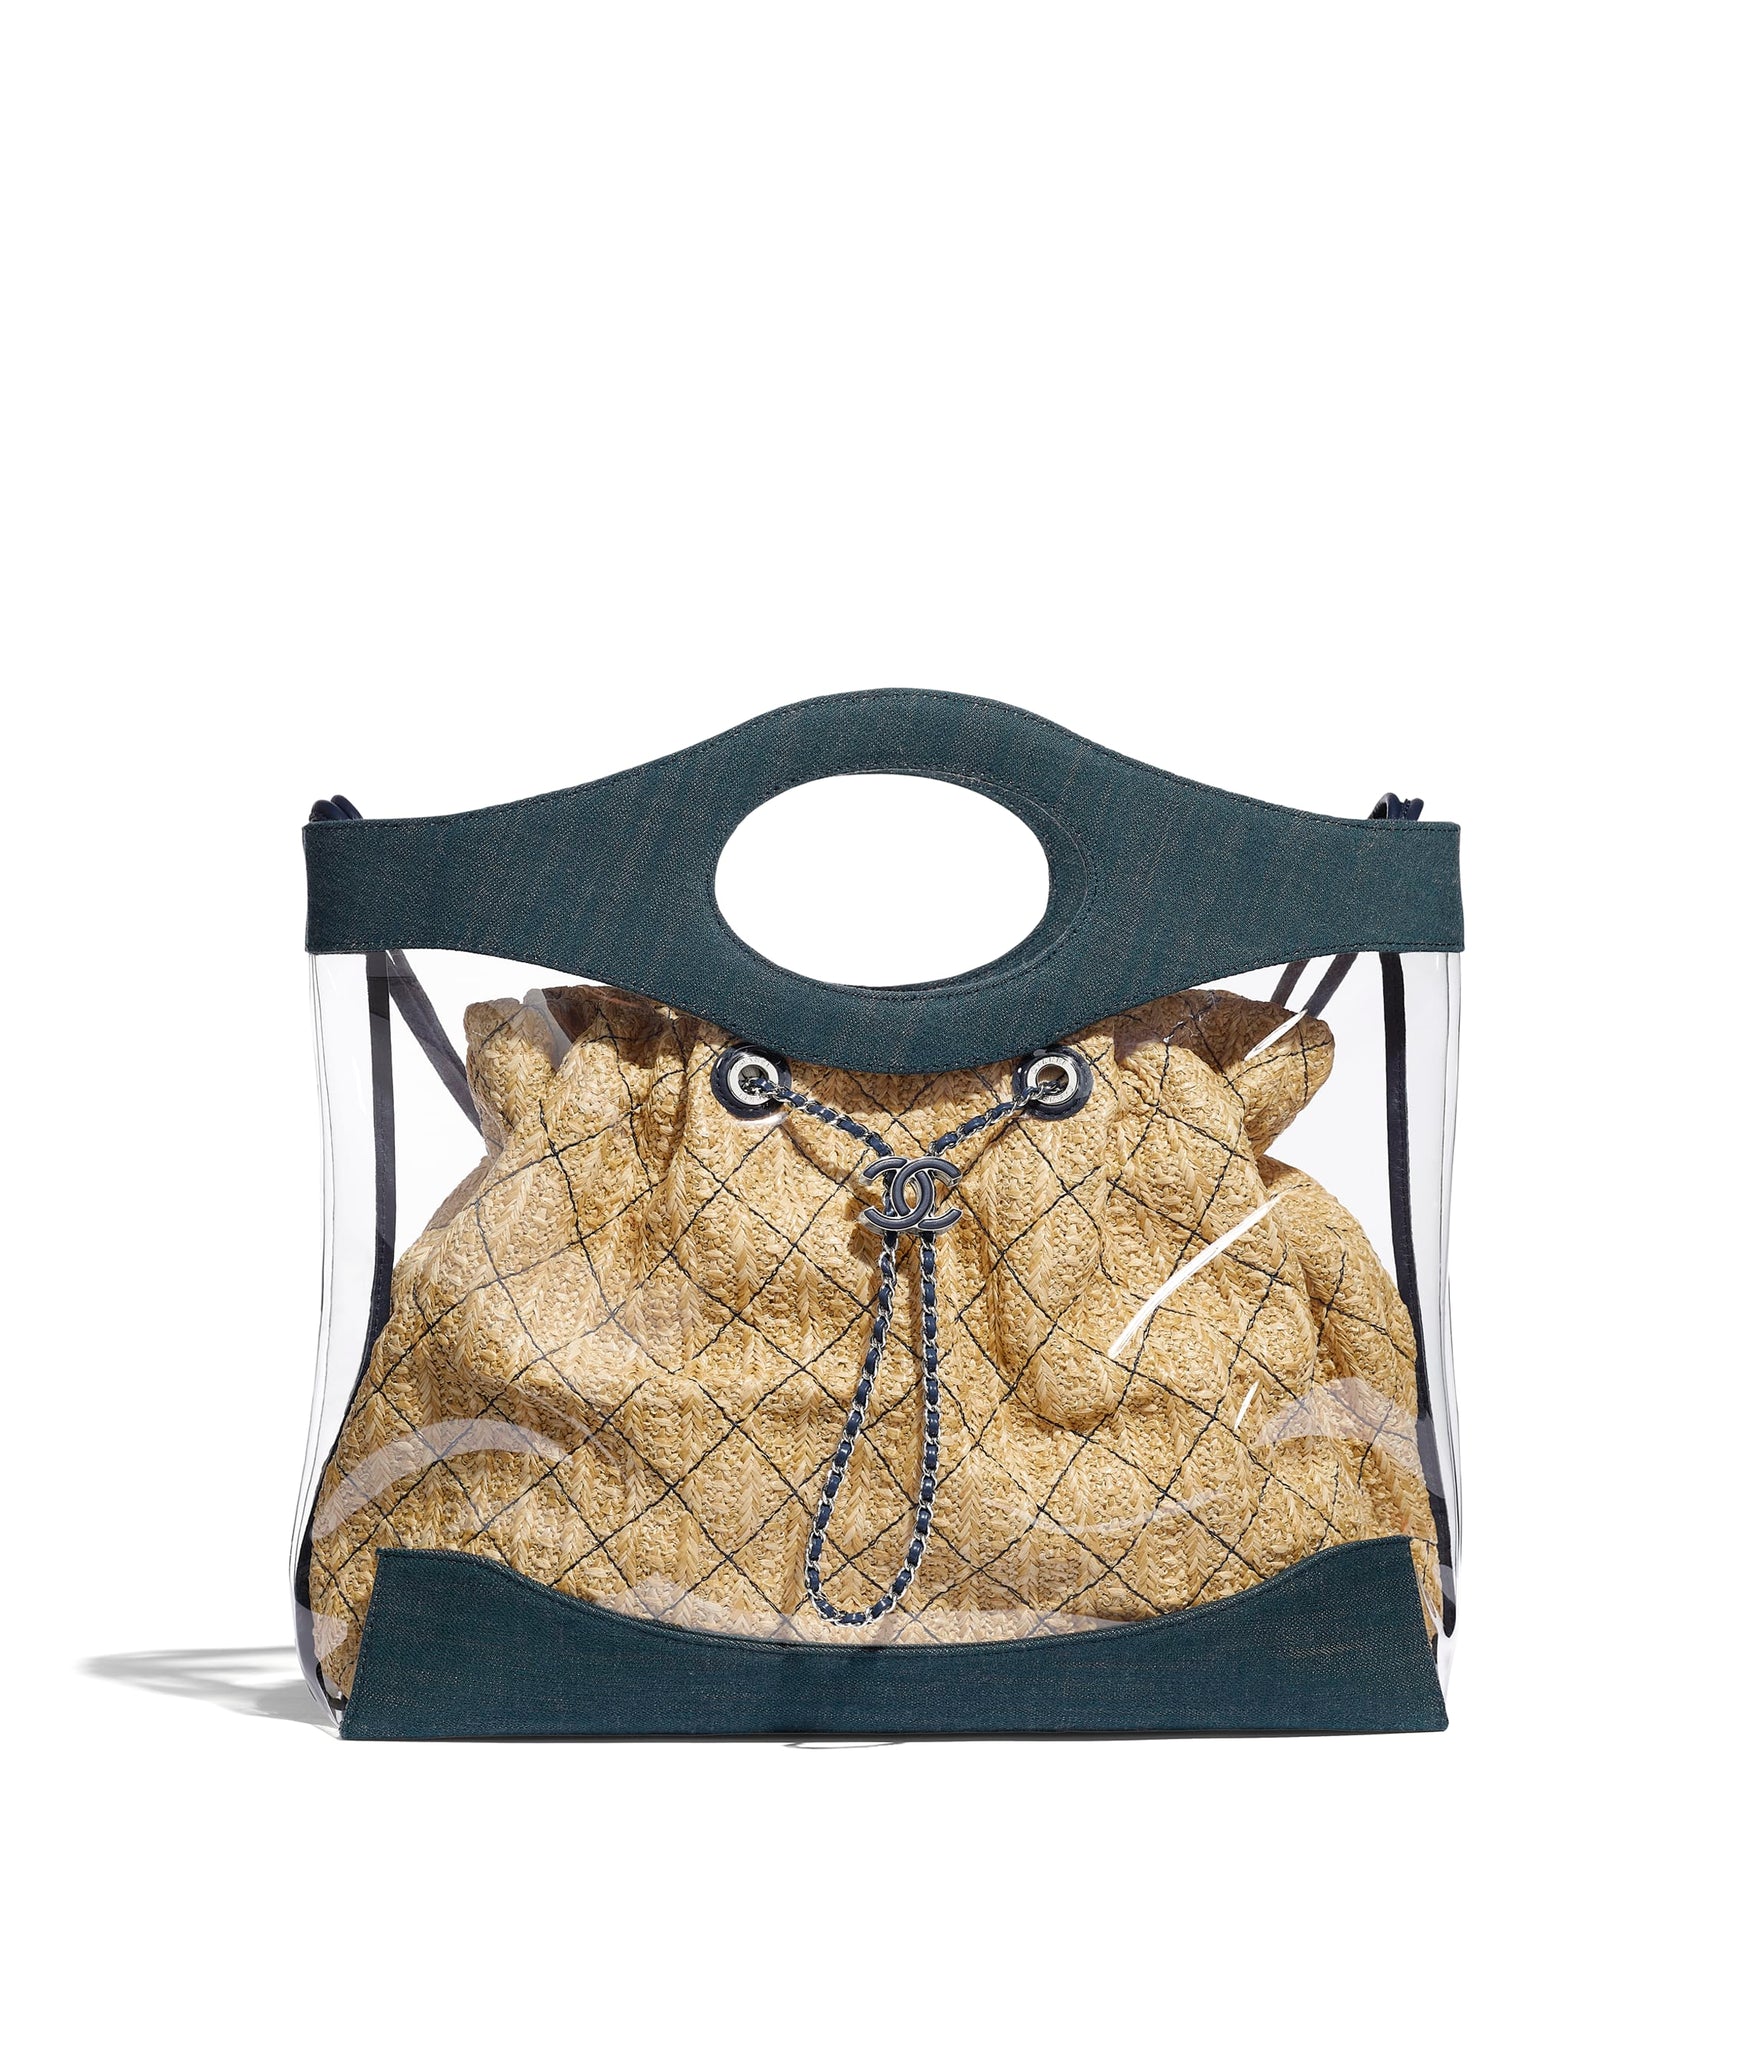 Chanel 31 Shopping Bag – Tulerie